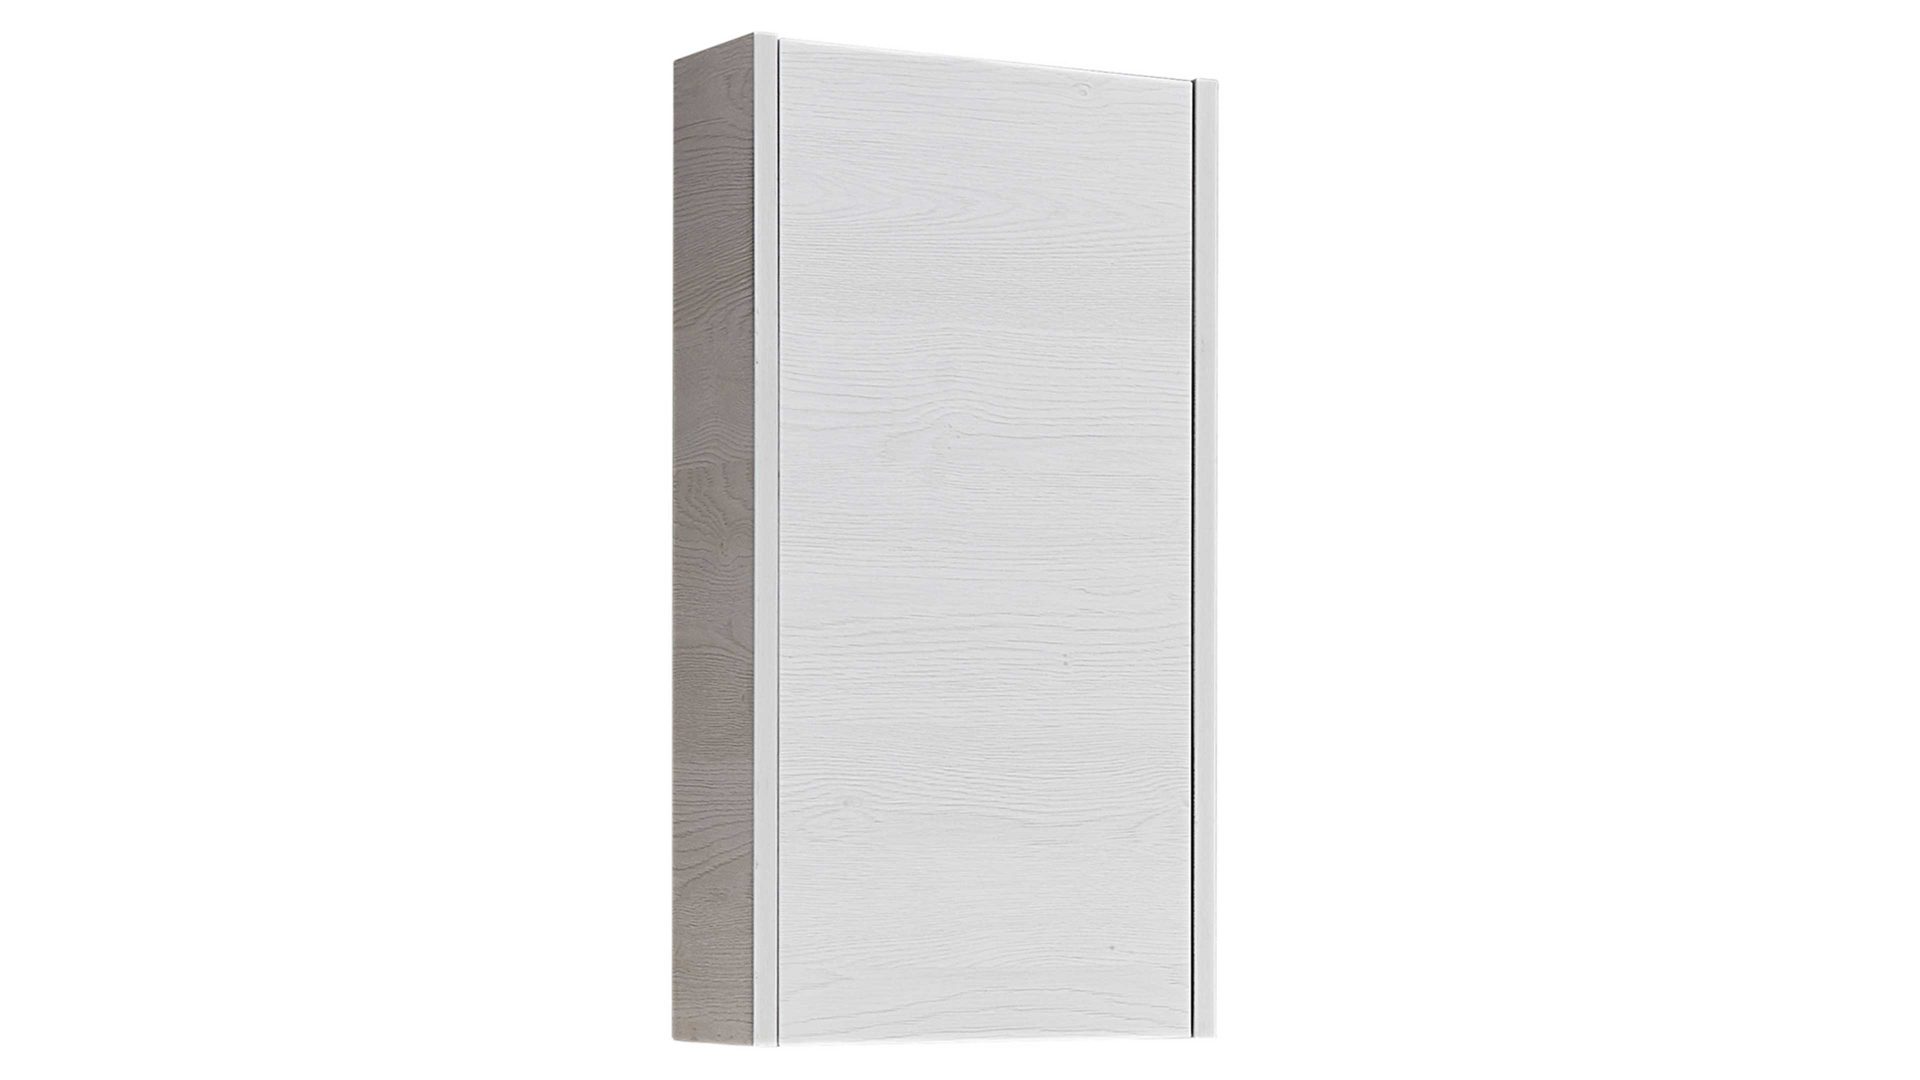 Hängeschrank Pelipal aus Holz in Weiß pelipal Serie 6040 - Hängeschrank weiße Eiche – eine Tür